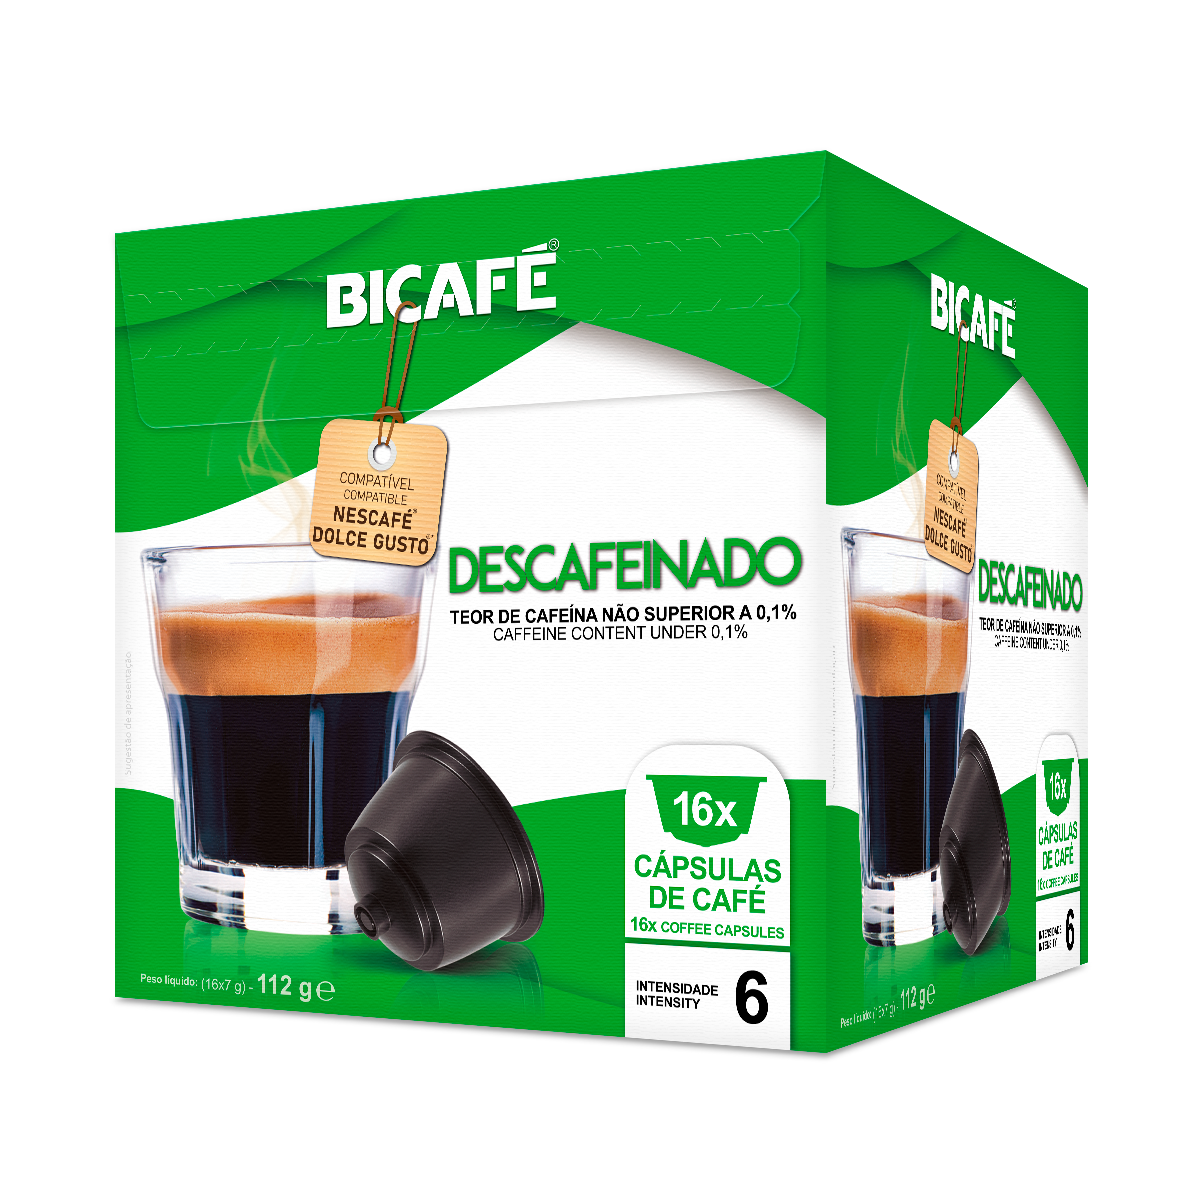 Cápsulas Compatibles Dolce Gusto Gourmet Café Bicafé 16 Un - Iber Coffee